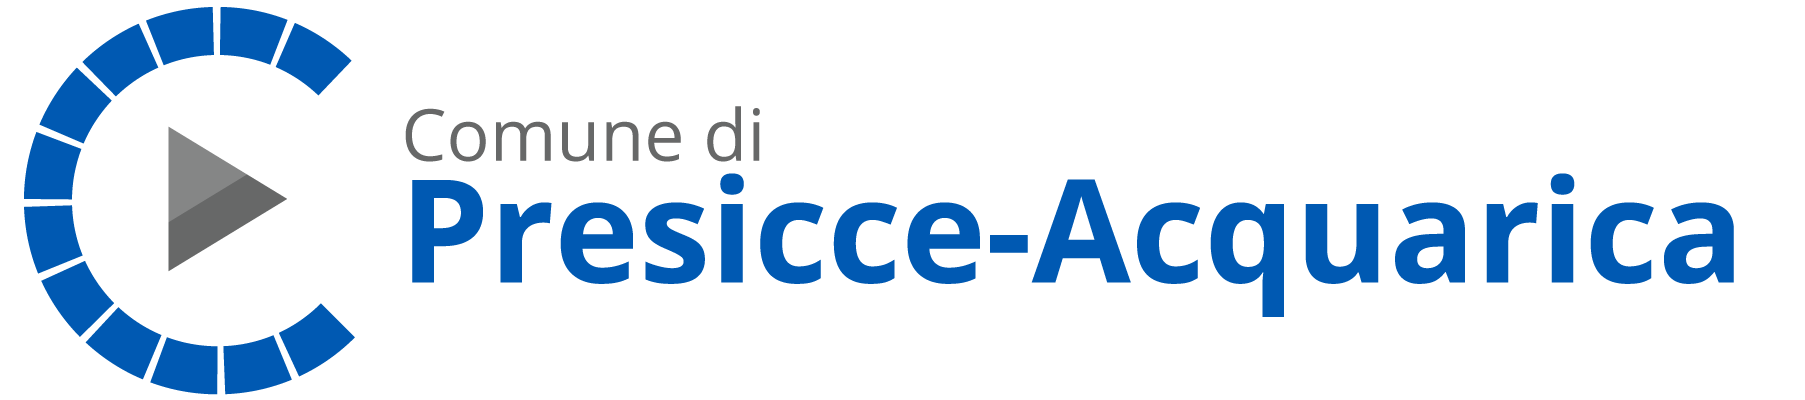 presicce-acquarica-logo-sito